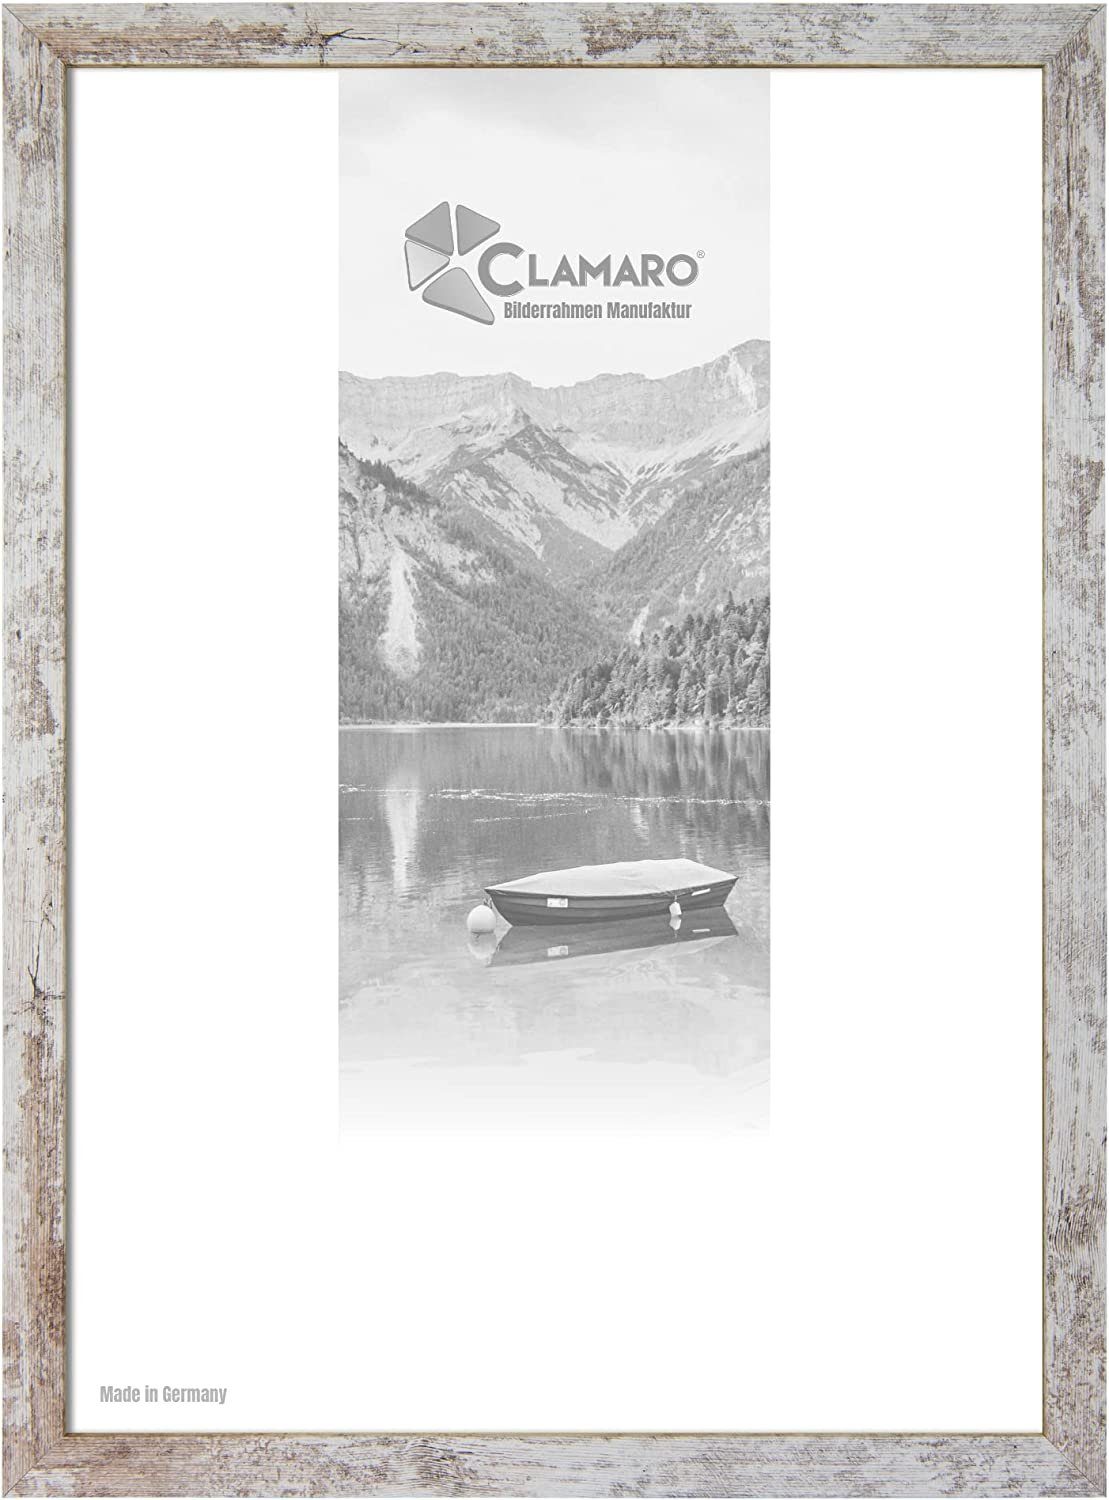 Clamaro Bilderrahmen Bilderrahmen Vintage Weiss CLAMARO Collage nach Maß FSC® Holz Modern eckig M3016 90x90 in Vintage Weiss